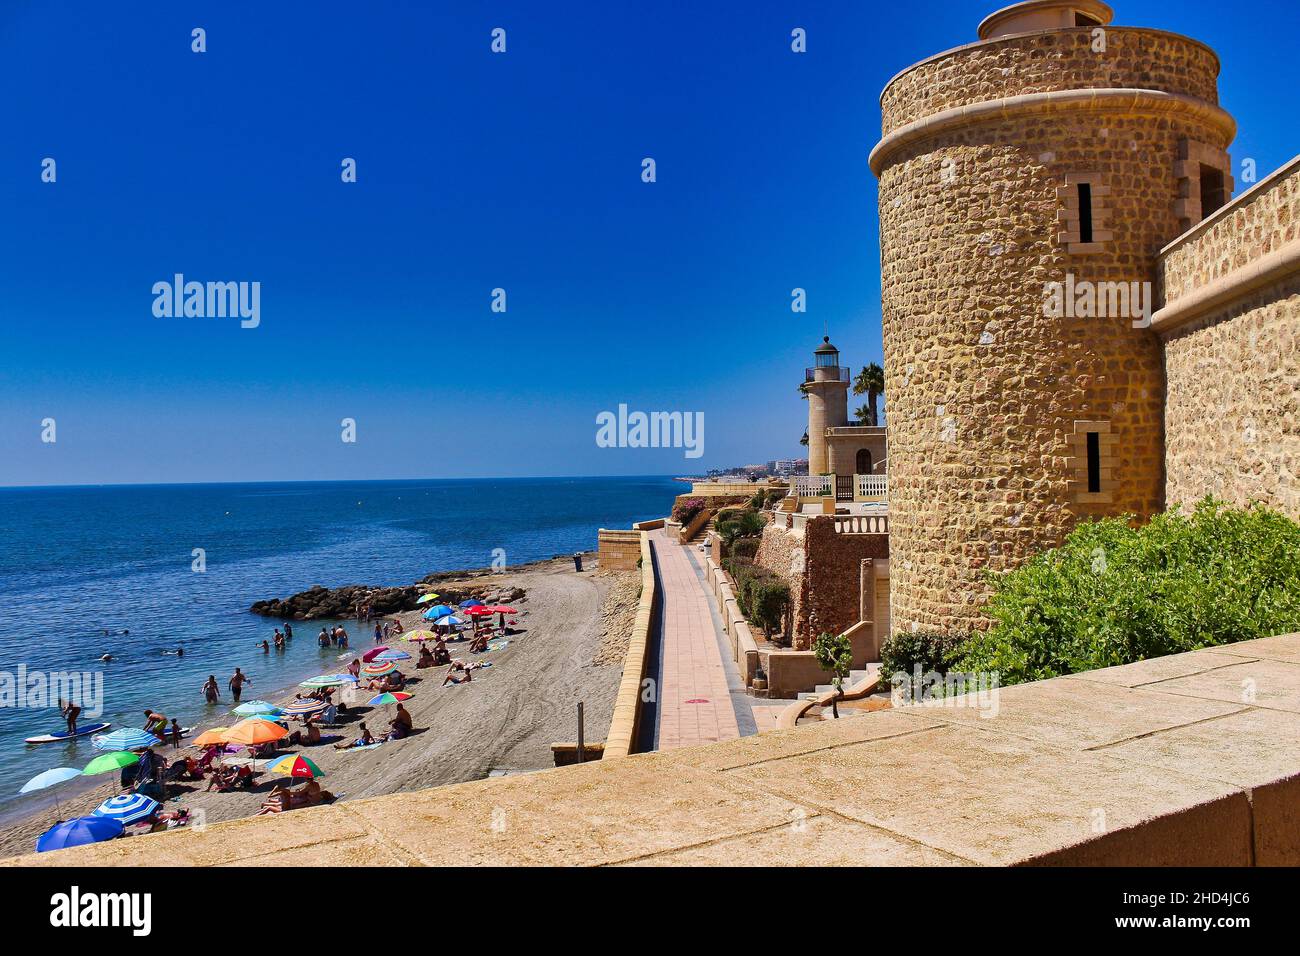 Château de Santa Ana avec la rive de la plage pleine de personnes, Roquetas de Mar, Almeria, Andalousie, Espagne. Banque D'Images